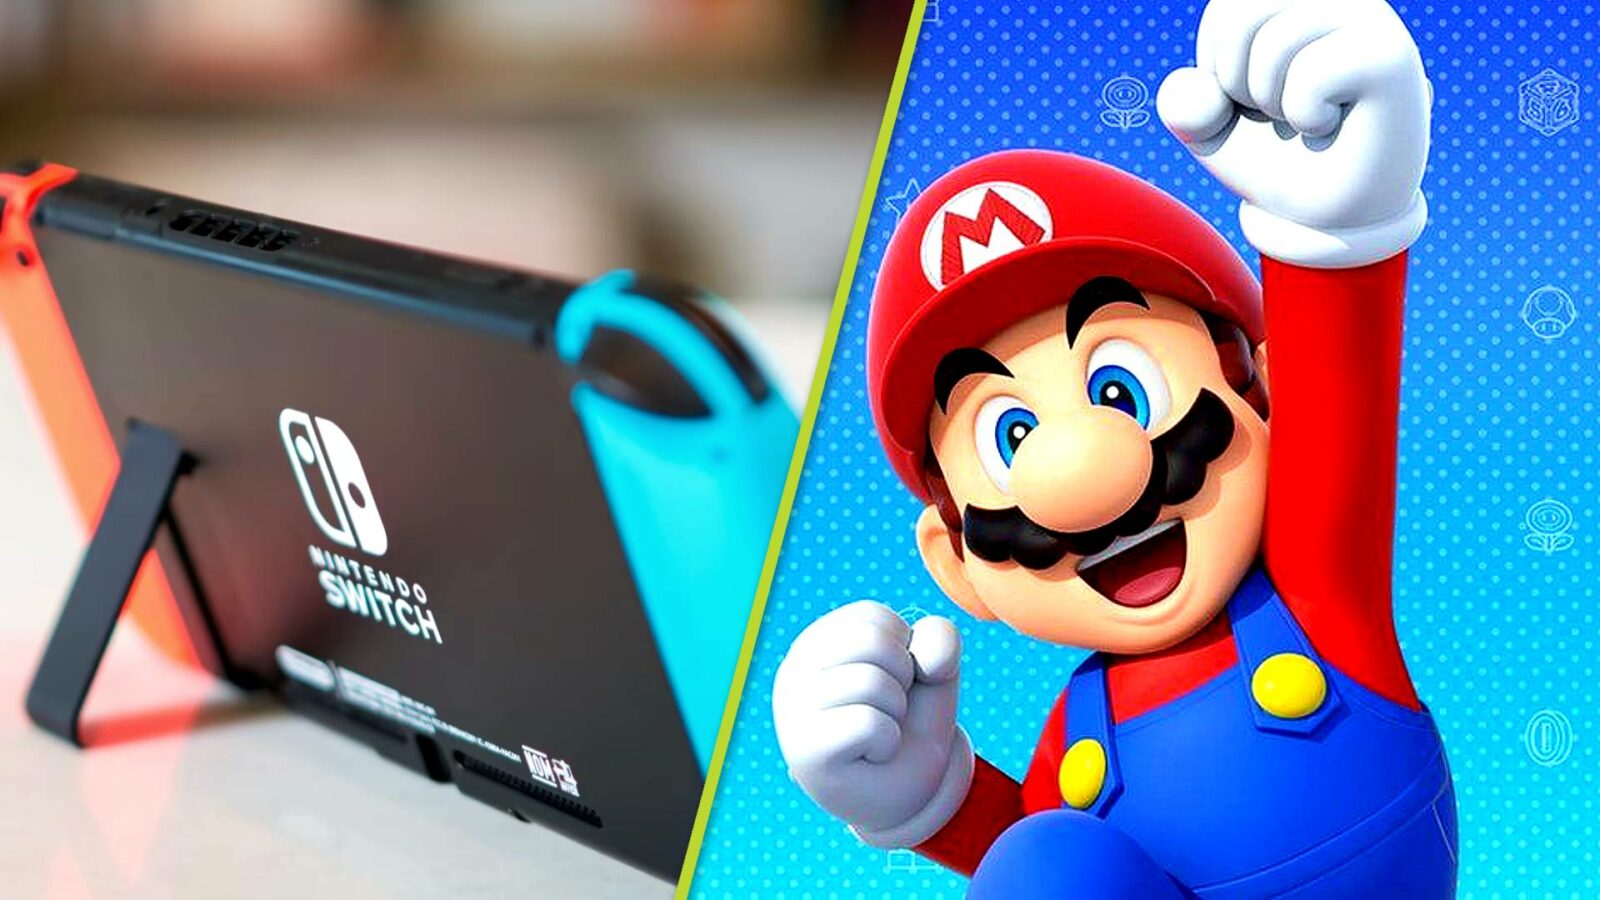 Nintendo SwitchはPS1に勝って、史上5番目のベストセラーコンソールになりました